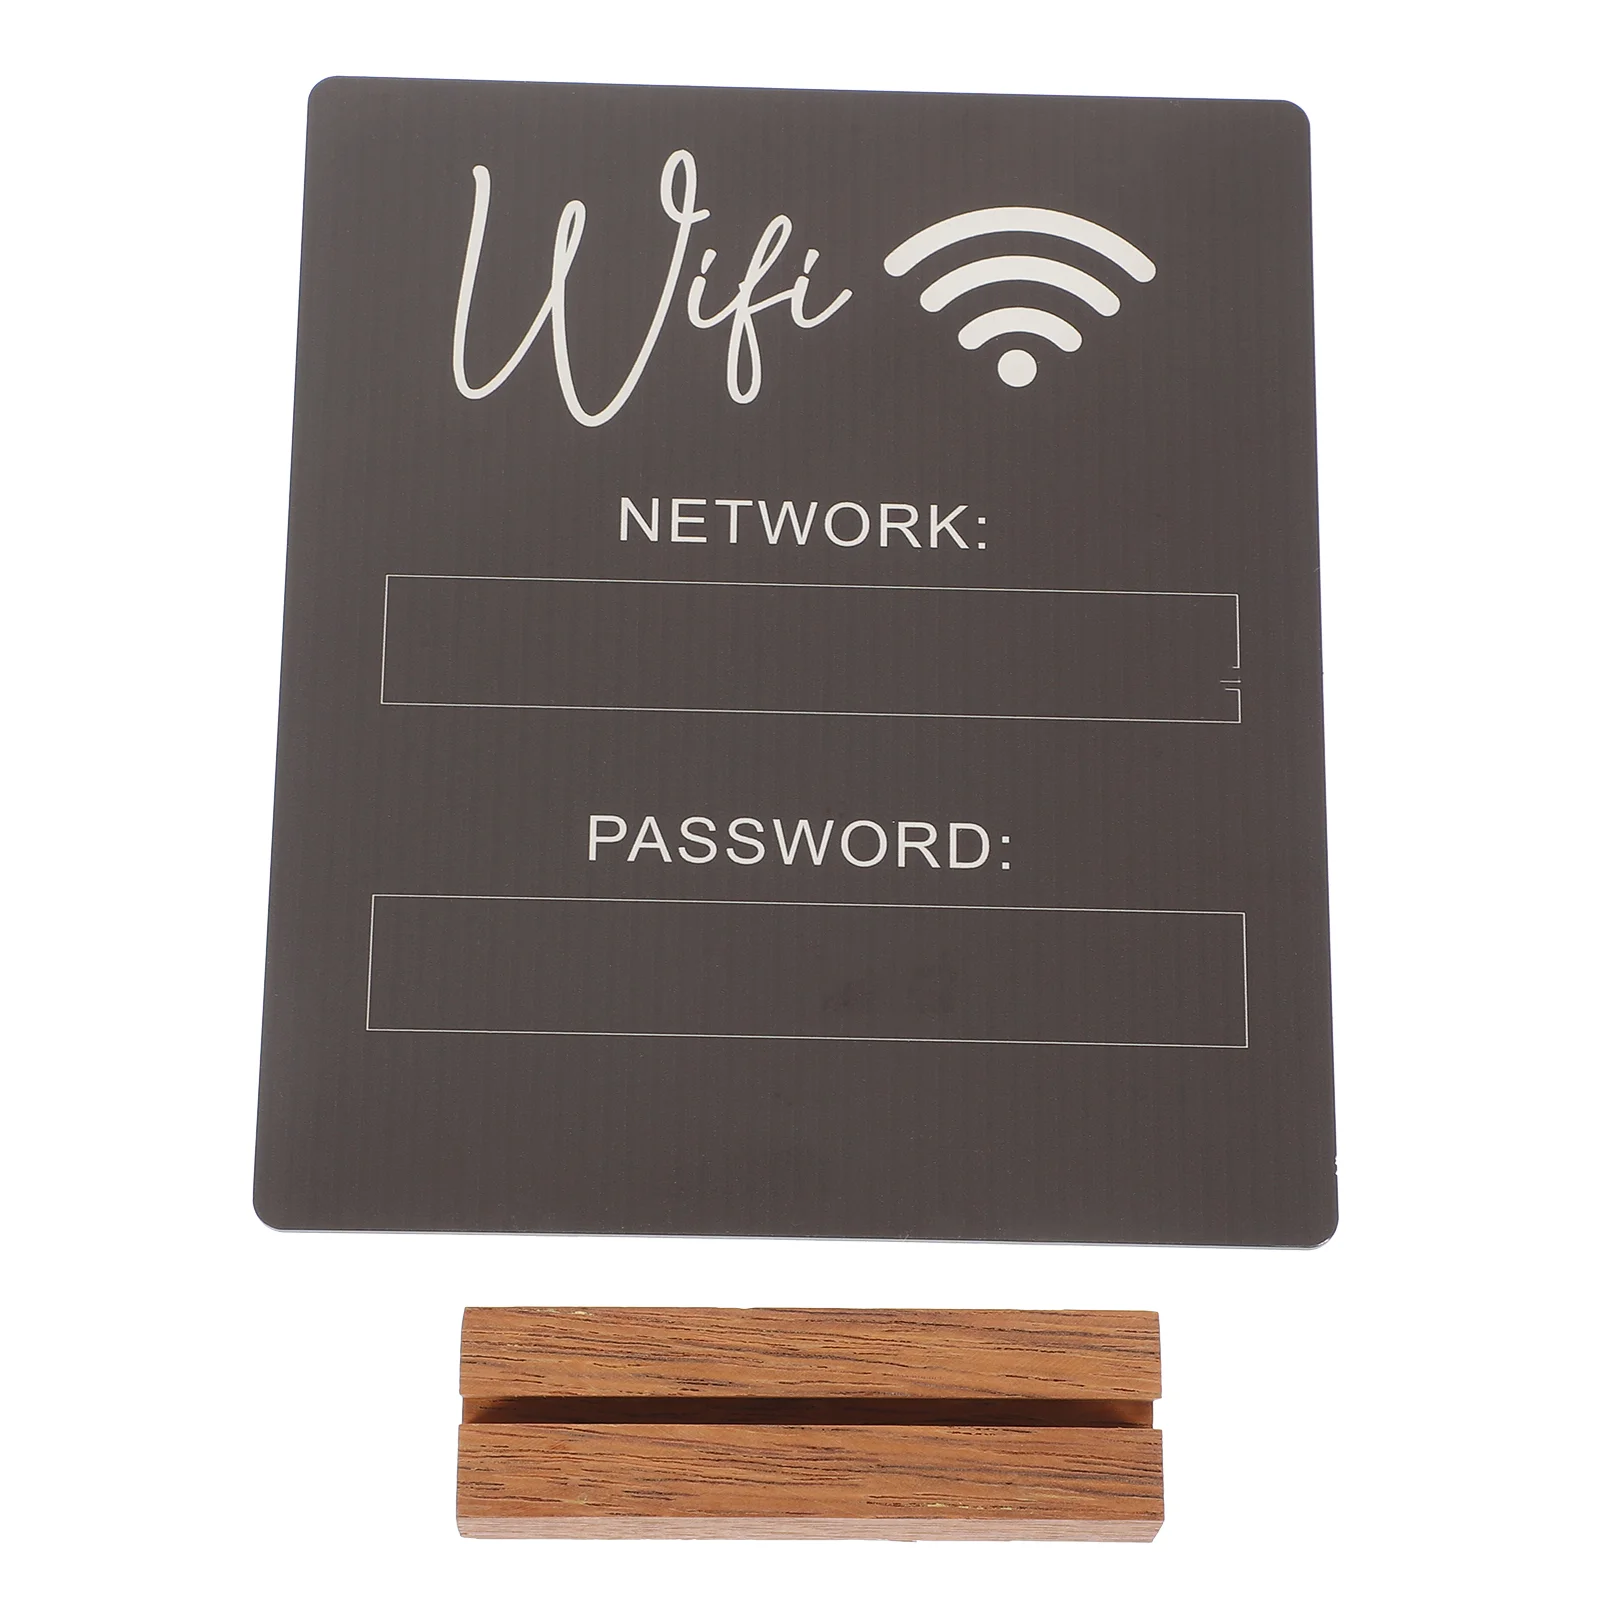 

Password Network Username Sign WiFi Acrylic Sign WiFi Sign WiFi Board WiFi Password Reminder Sign